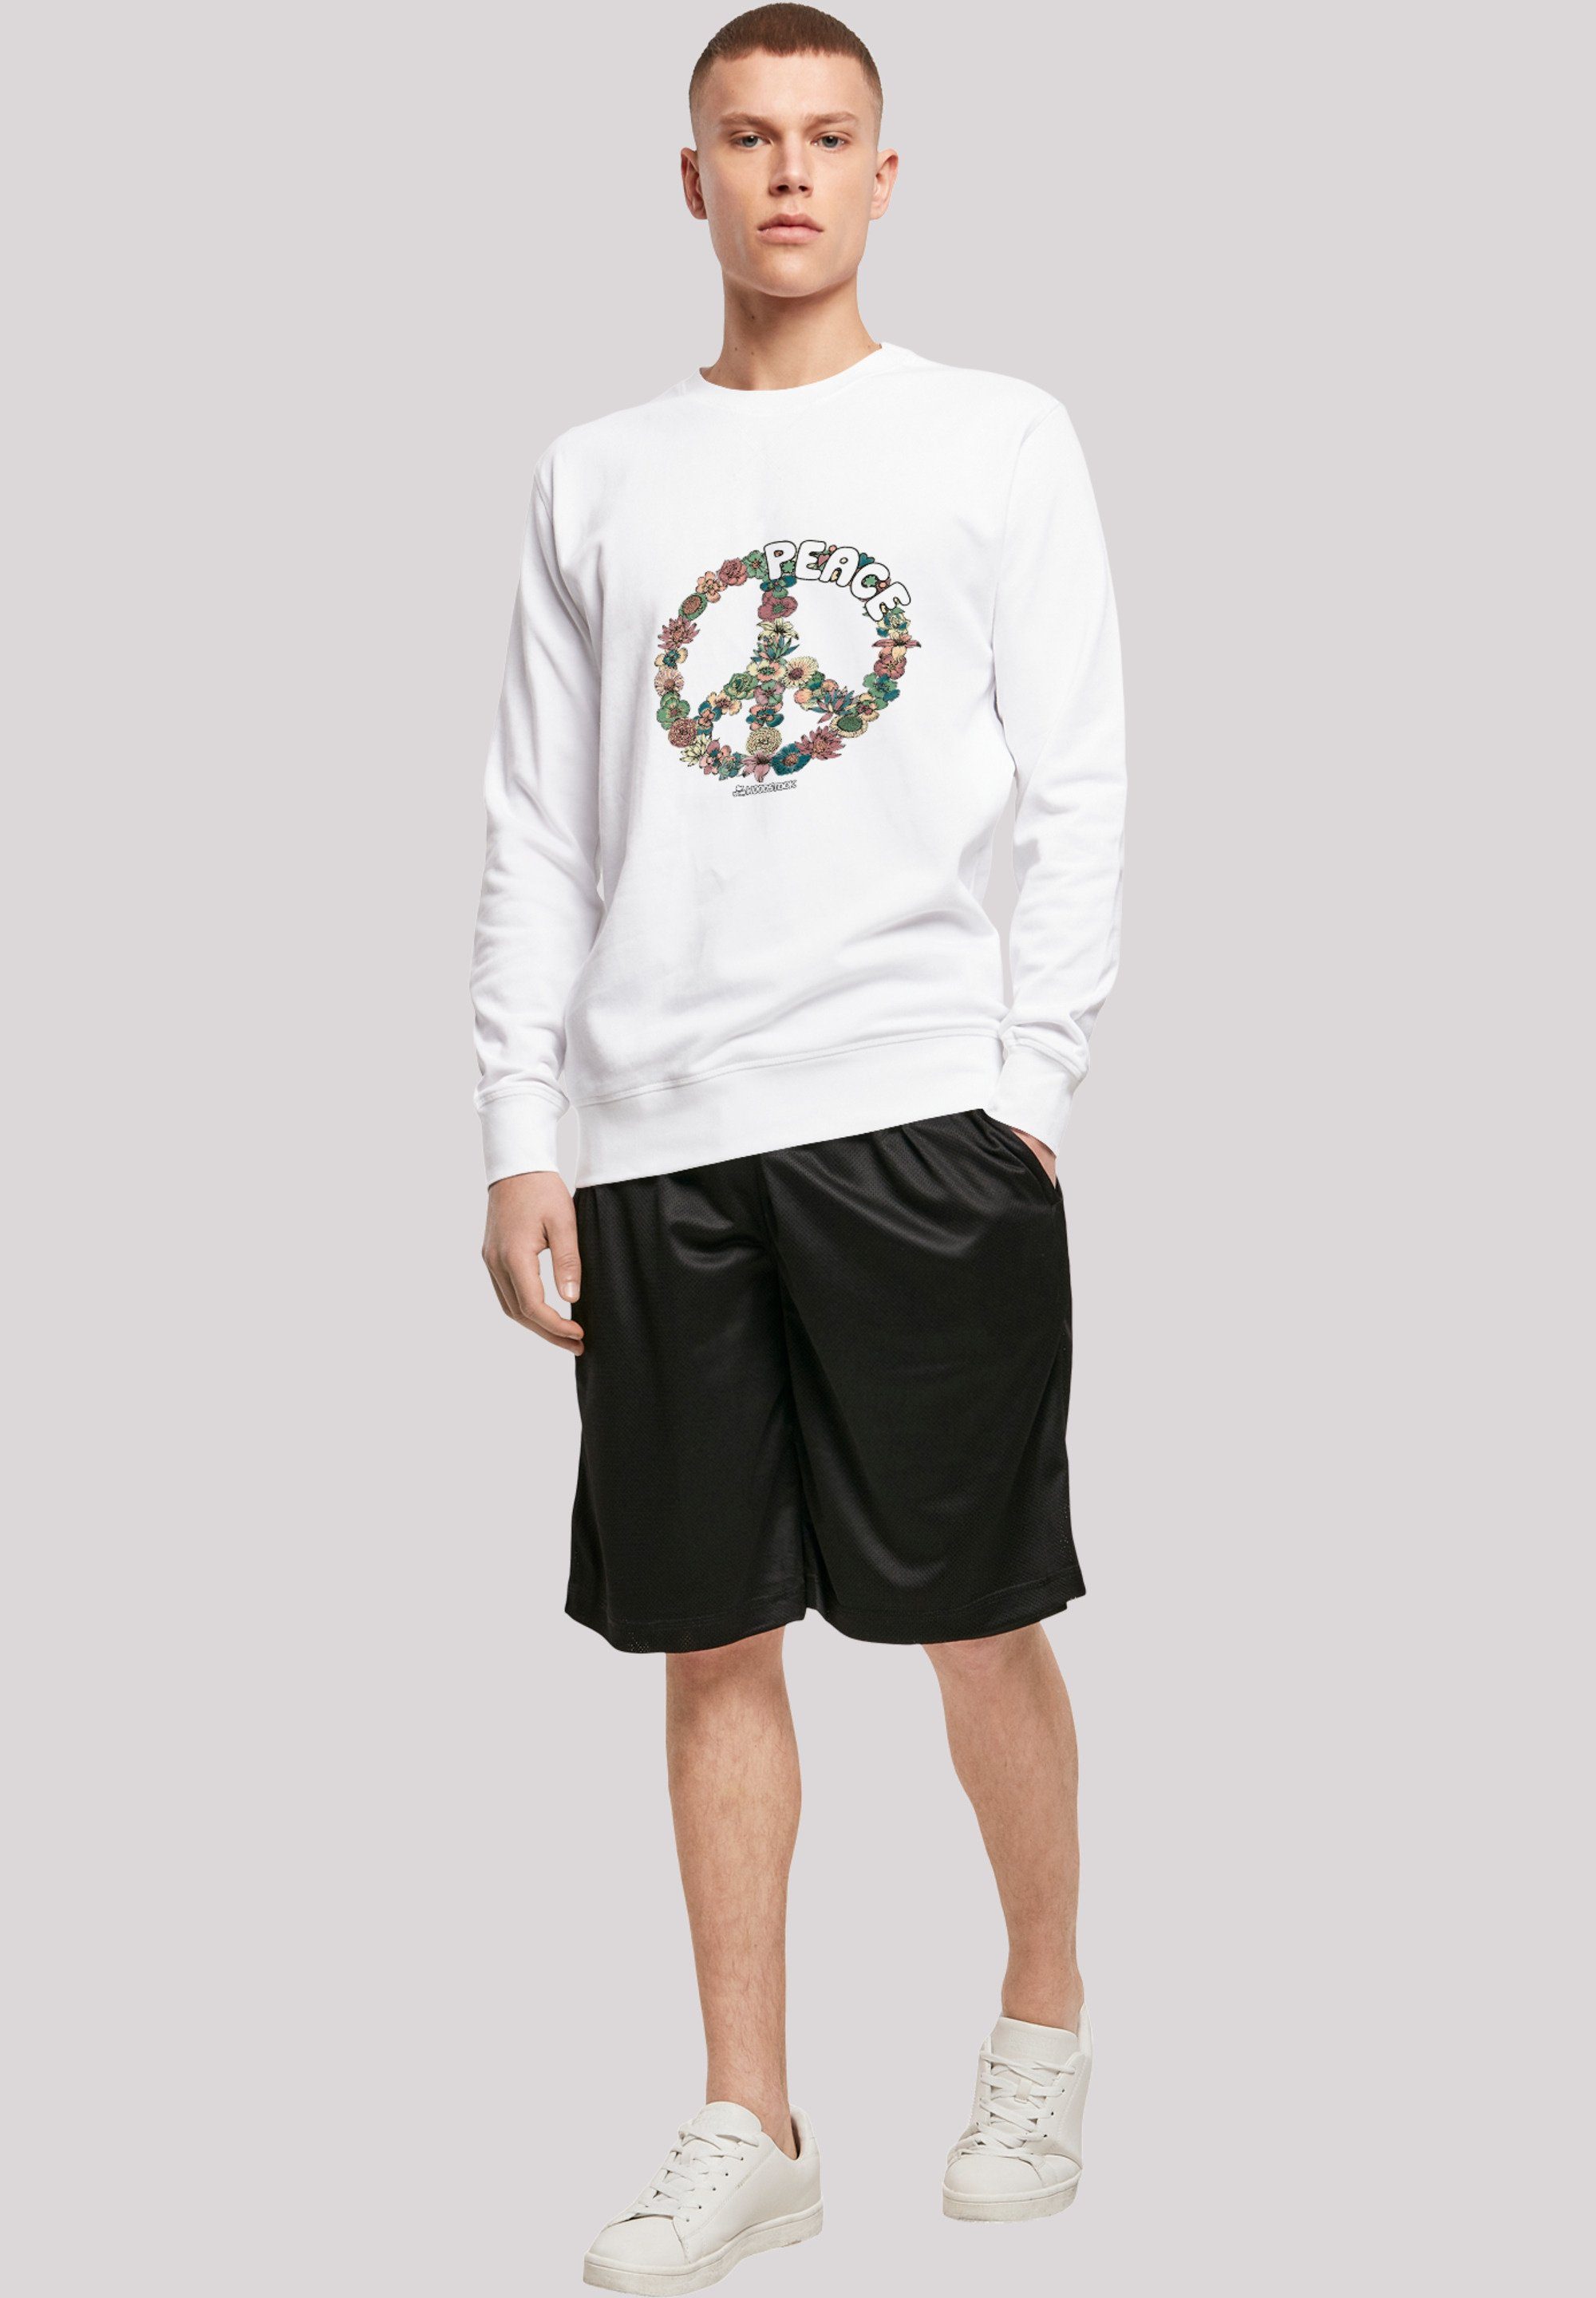 Herren Pullover F4NT4STIC Sweatshirt Sweatshirt 'Woodstock Peace Zeichen Blumen'